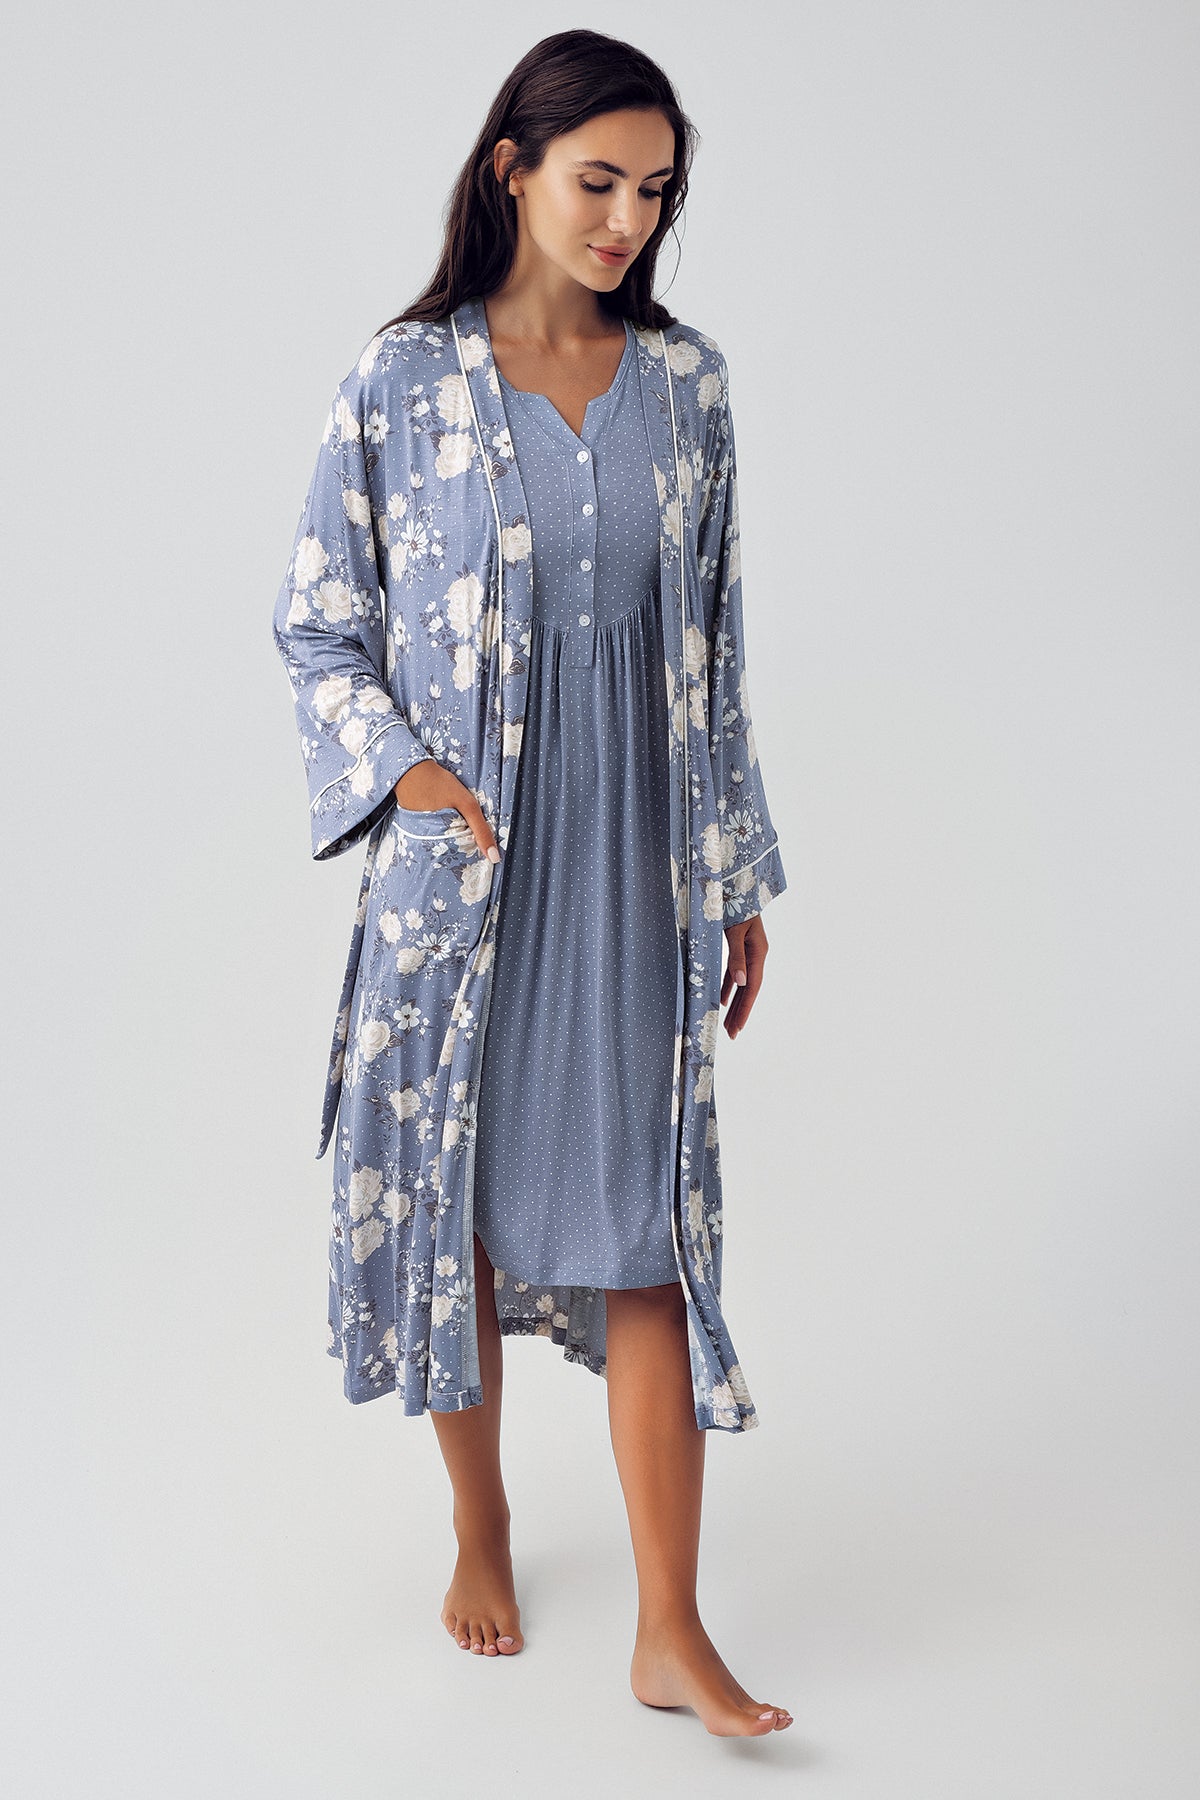 Shopymommy 15404 Polka Dot Maternity & Nursing Nightgown With Flower Patterned Robe Indigo